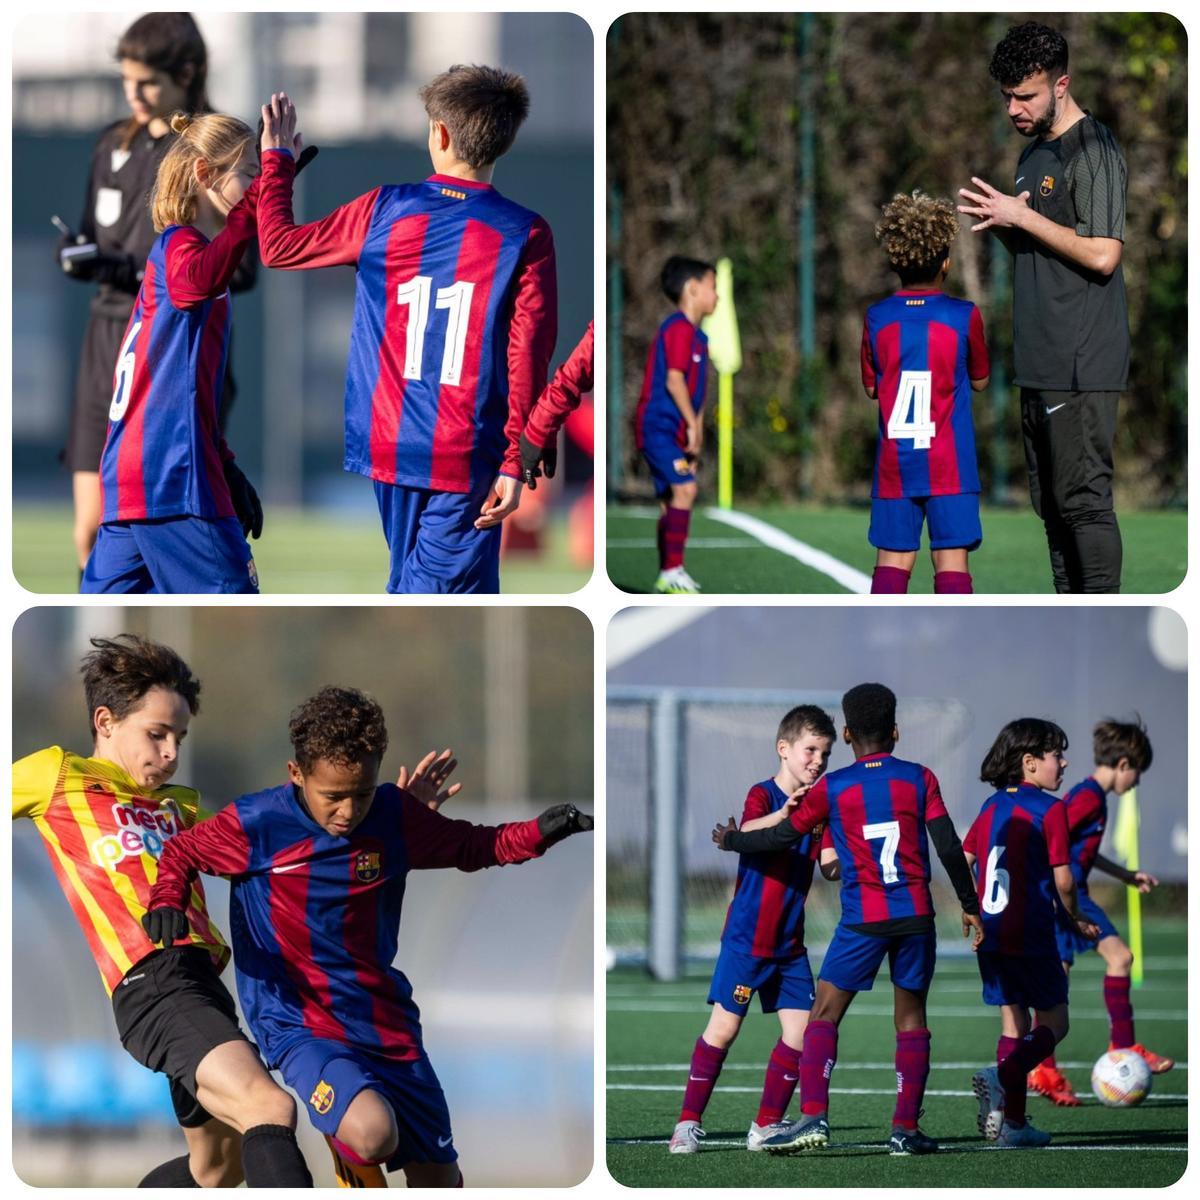 Jugadores, celebraciones, jugadas, goles y formadores del fútbol-7 del Barça (Paco Revert, en la imagen)